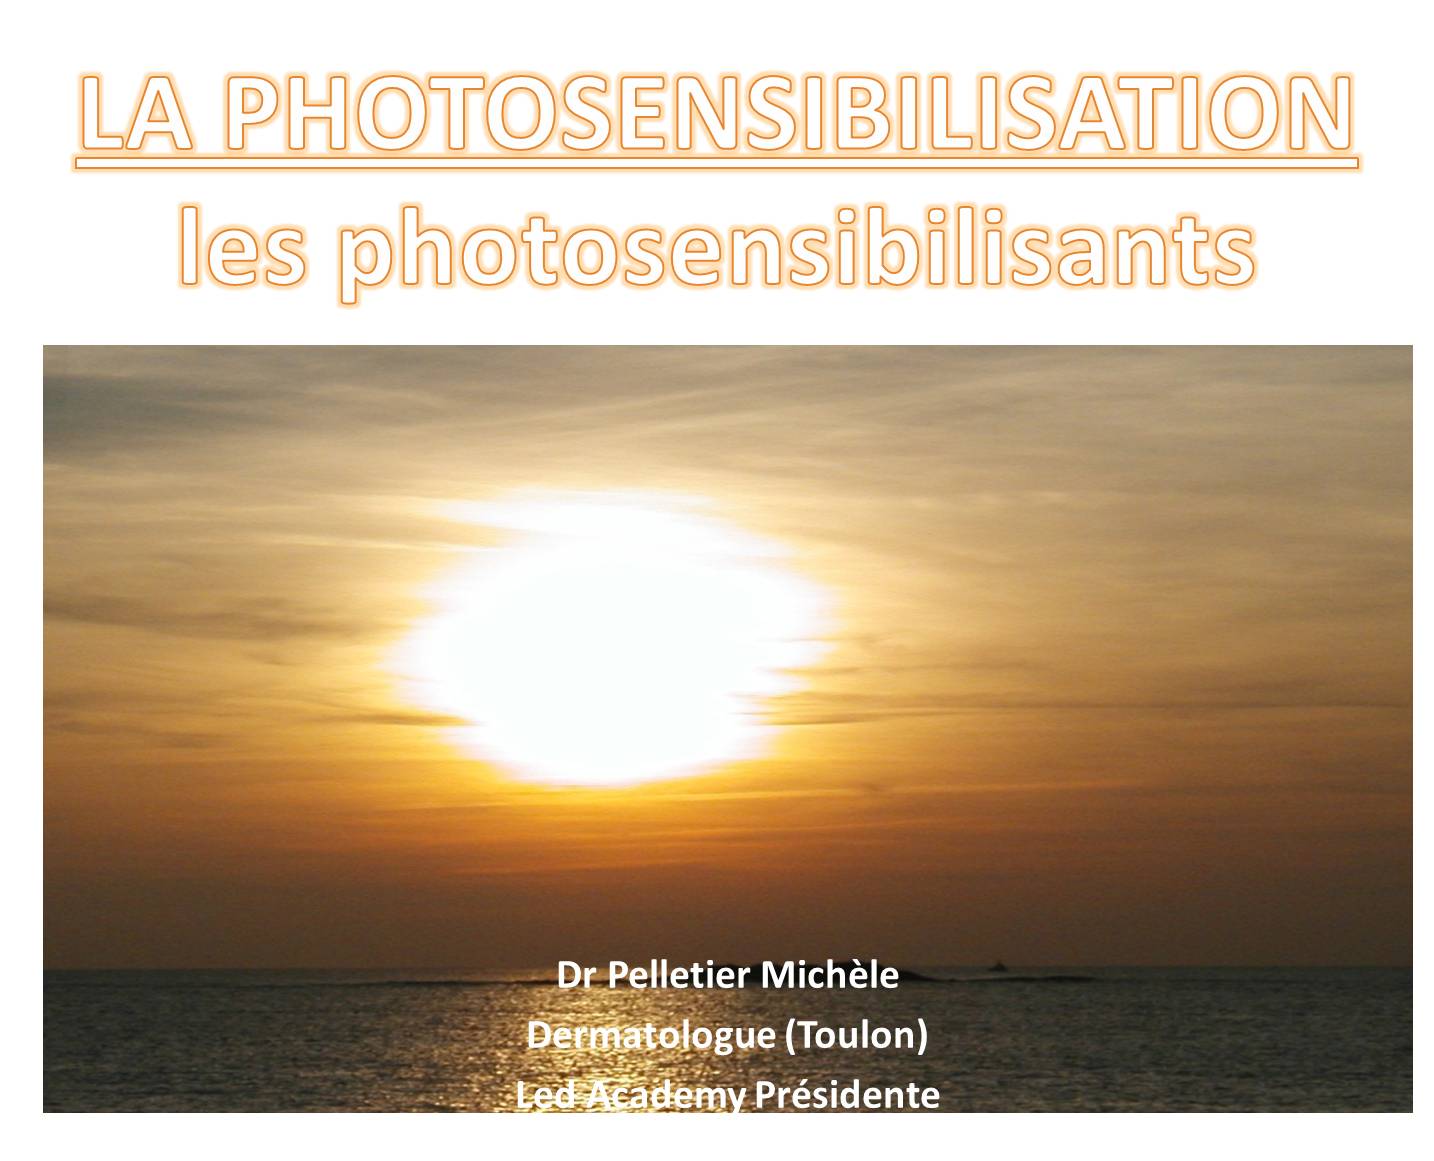 PHOTOTOSENSIBILISATION - Le pouvoir photosensibilisant d’une substance appliquée dépend du spectre d’action lumineux...